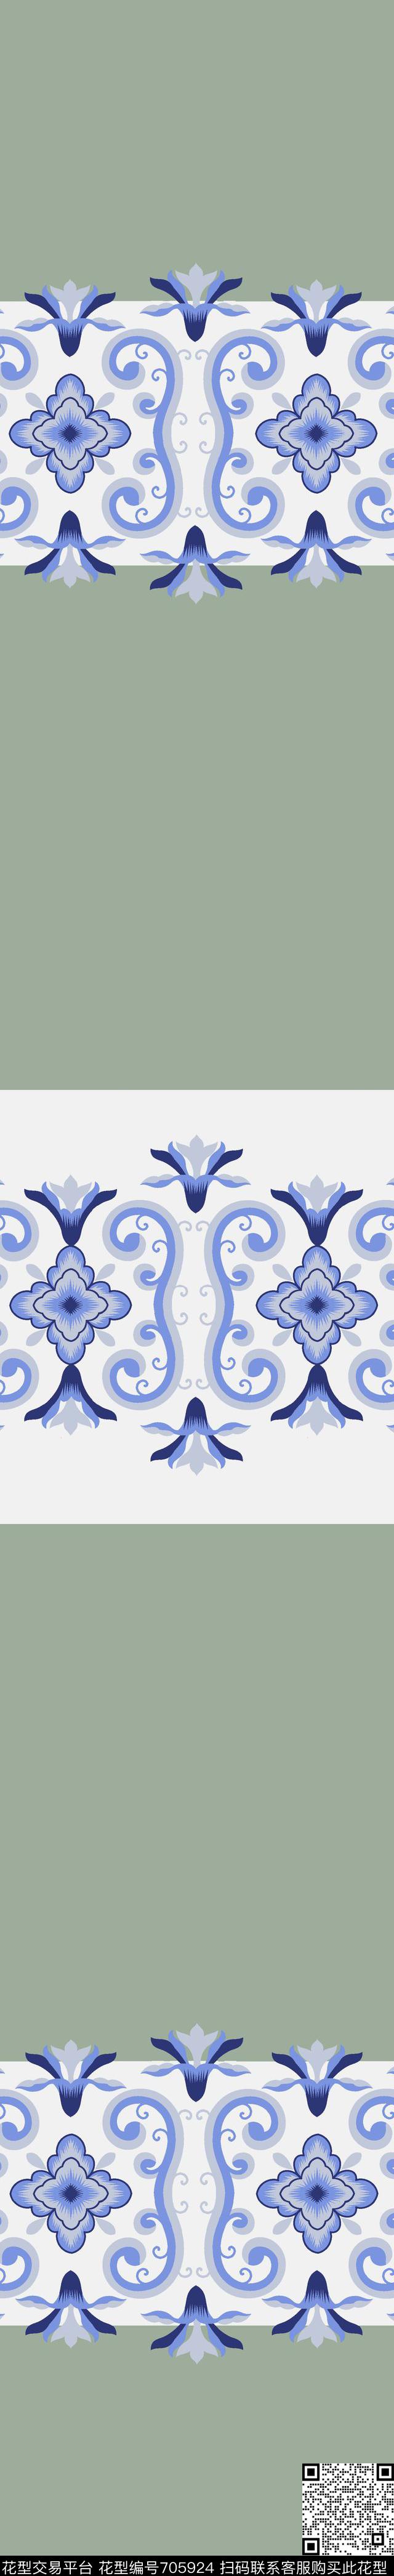 028.jpg - 705924 - 欧式 法式 美式 - 传统印花花型 － 窗帘花型设计 － 瓦栏